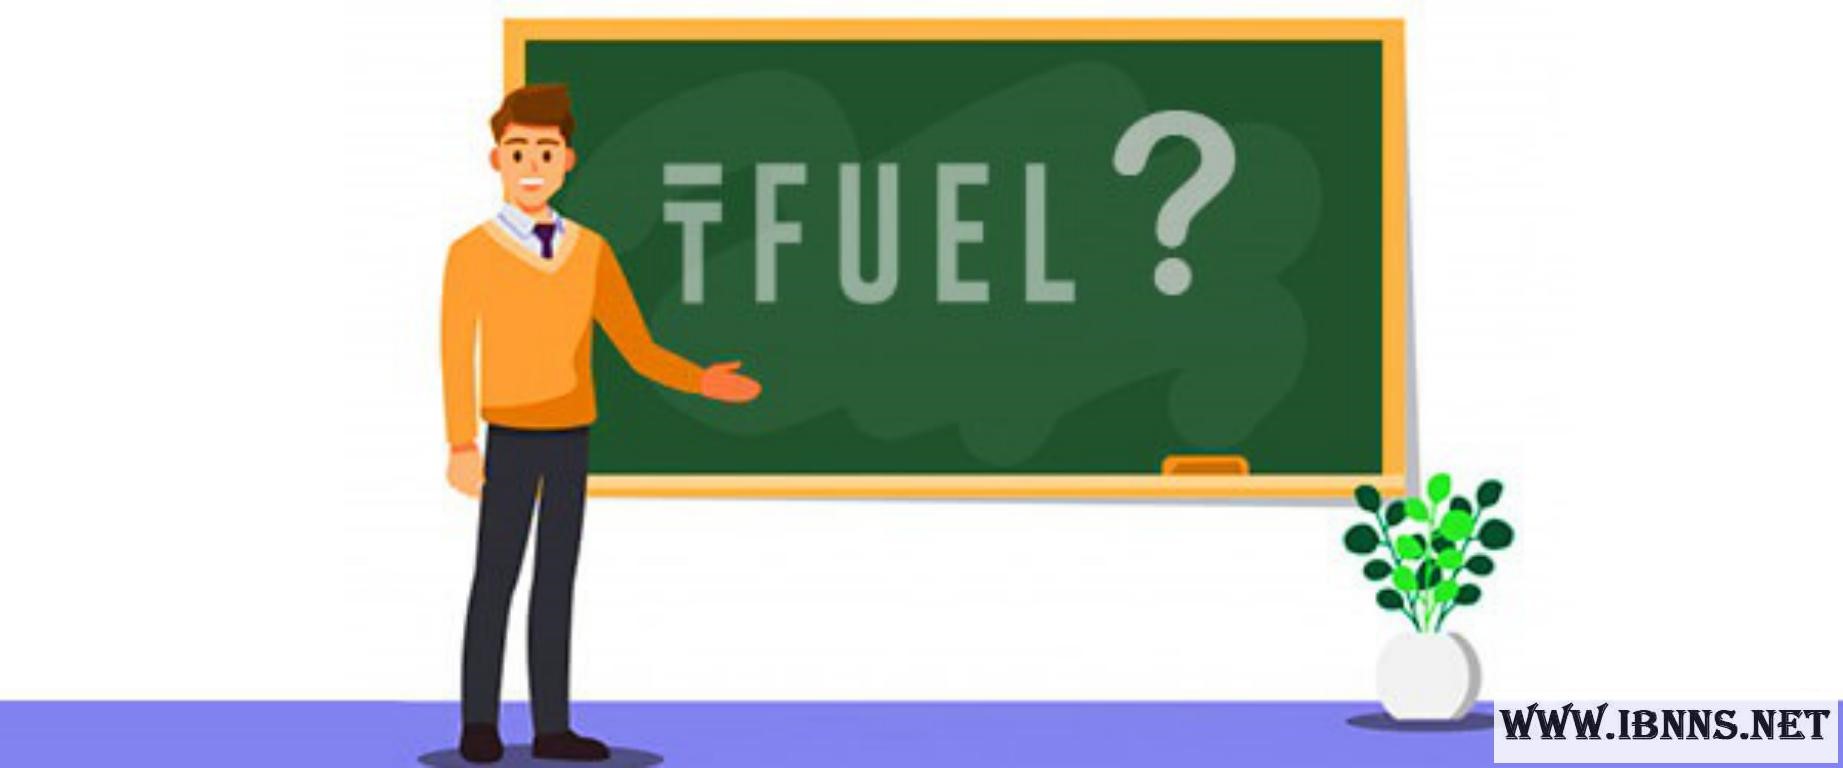 ارز دیجیتال تتا فیول چیست؟ | معرفی کامل ارز دیجیتال Theta Fuel | بررسی قیمت و آینده TFUEL